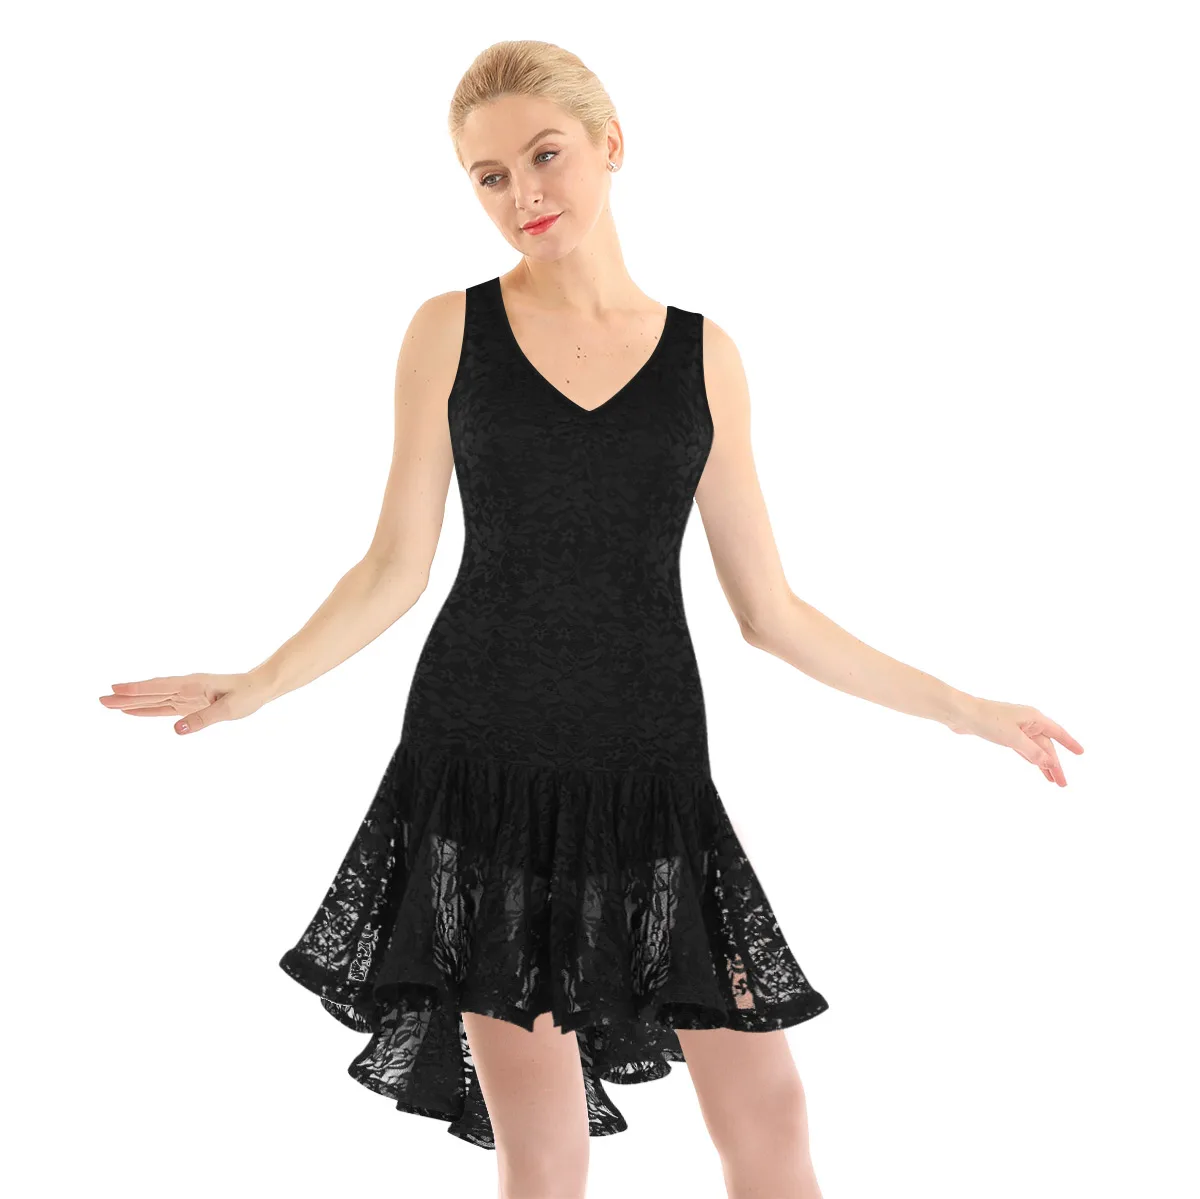 Женское платье без рукавов с рюшами, лирическое платье для танцев, танцевальный костюм для взрослых, Одежда для танцев, балетное платье, кружевное асимметричное платье для тренировок - Цвет: Black